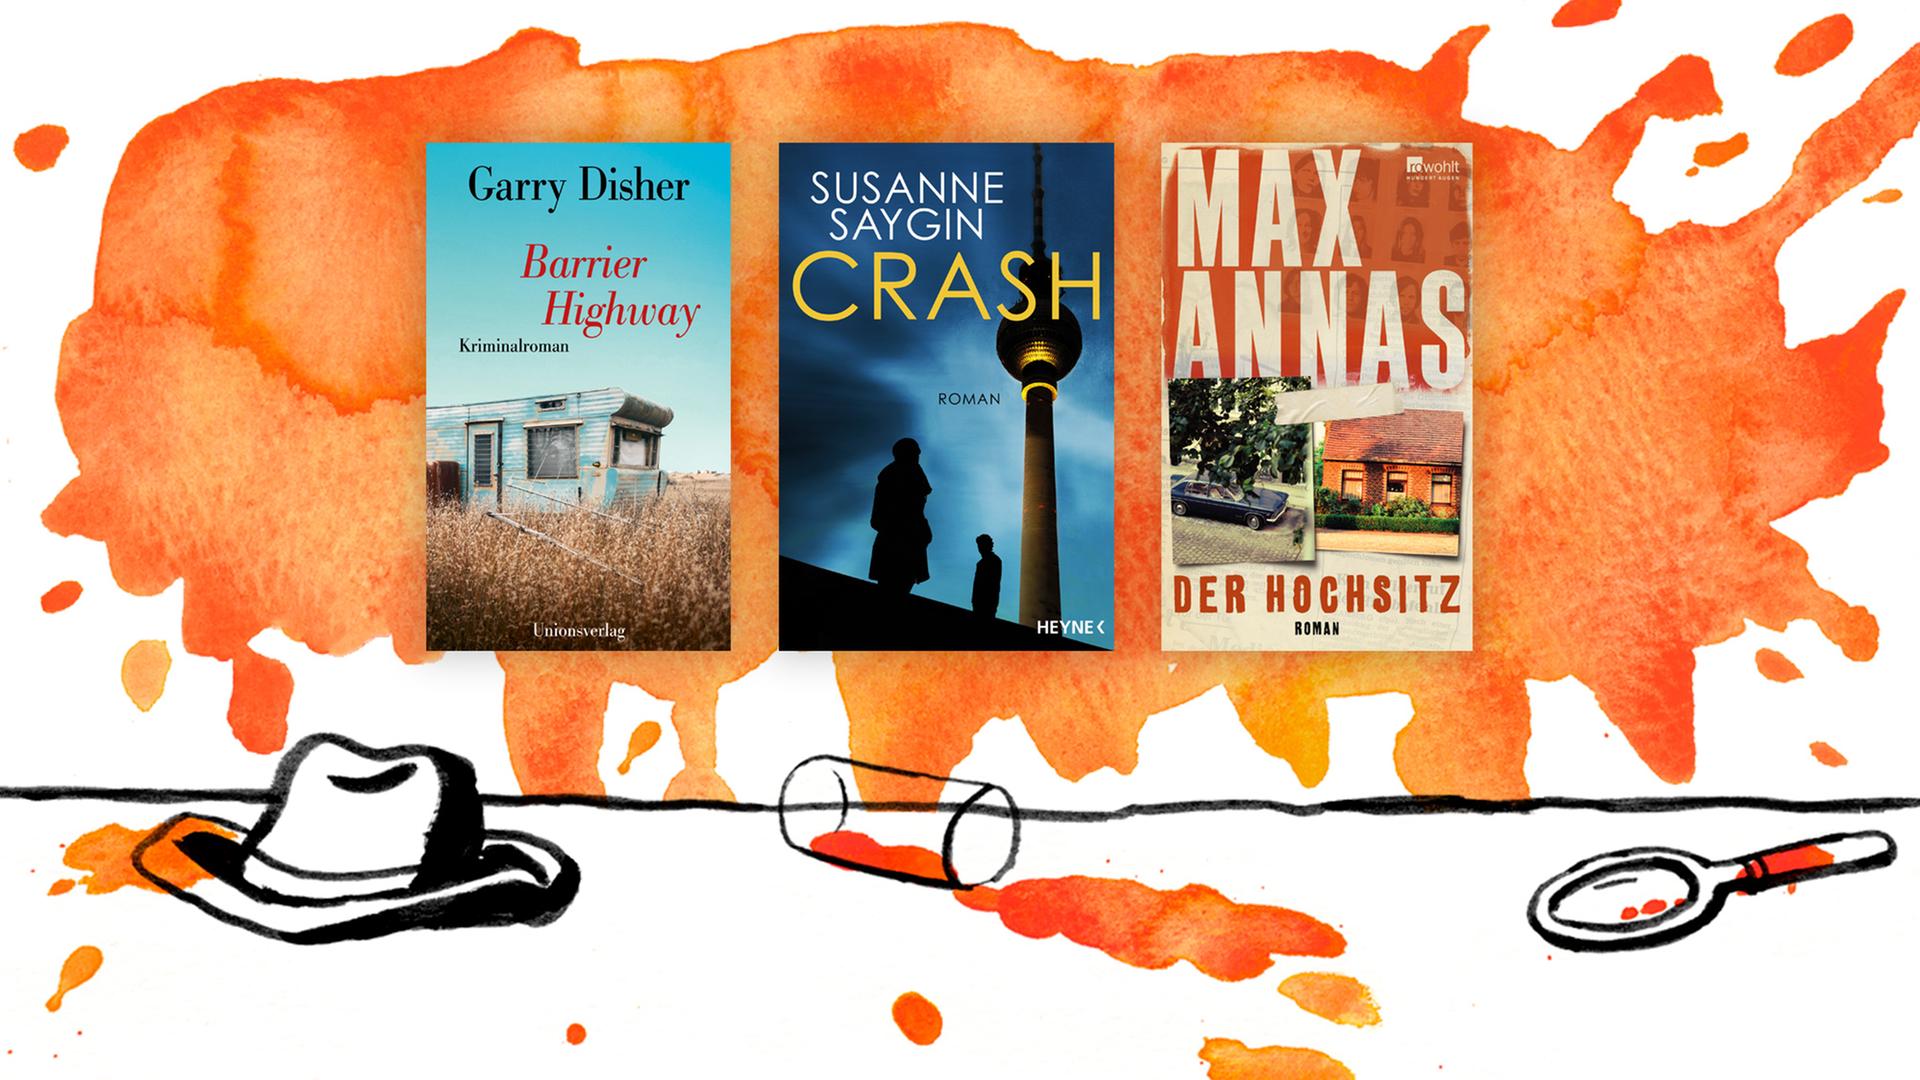 Die Cover der Top drei der Krimibestenliste Im September 2021: Garry Dishers "Barrier Highway", Susanne Saygins „Crash“ und Max Annas' "Der Hochsitz" (v.l.n.r.).